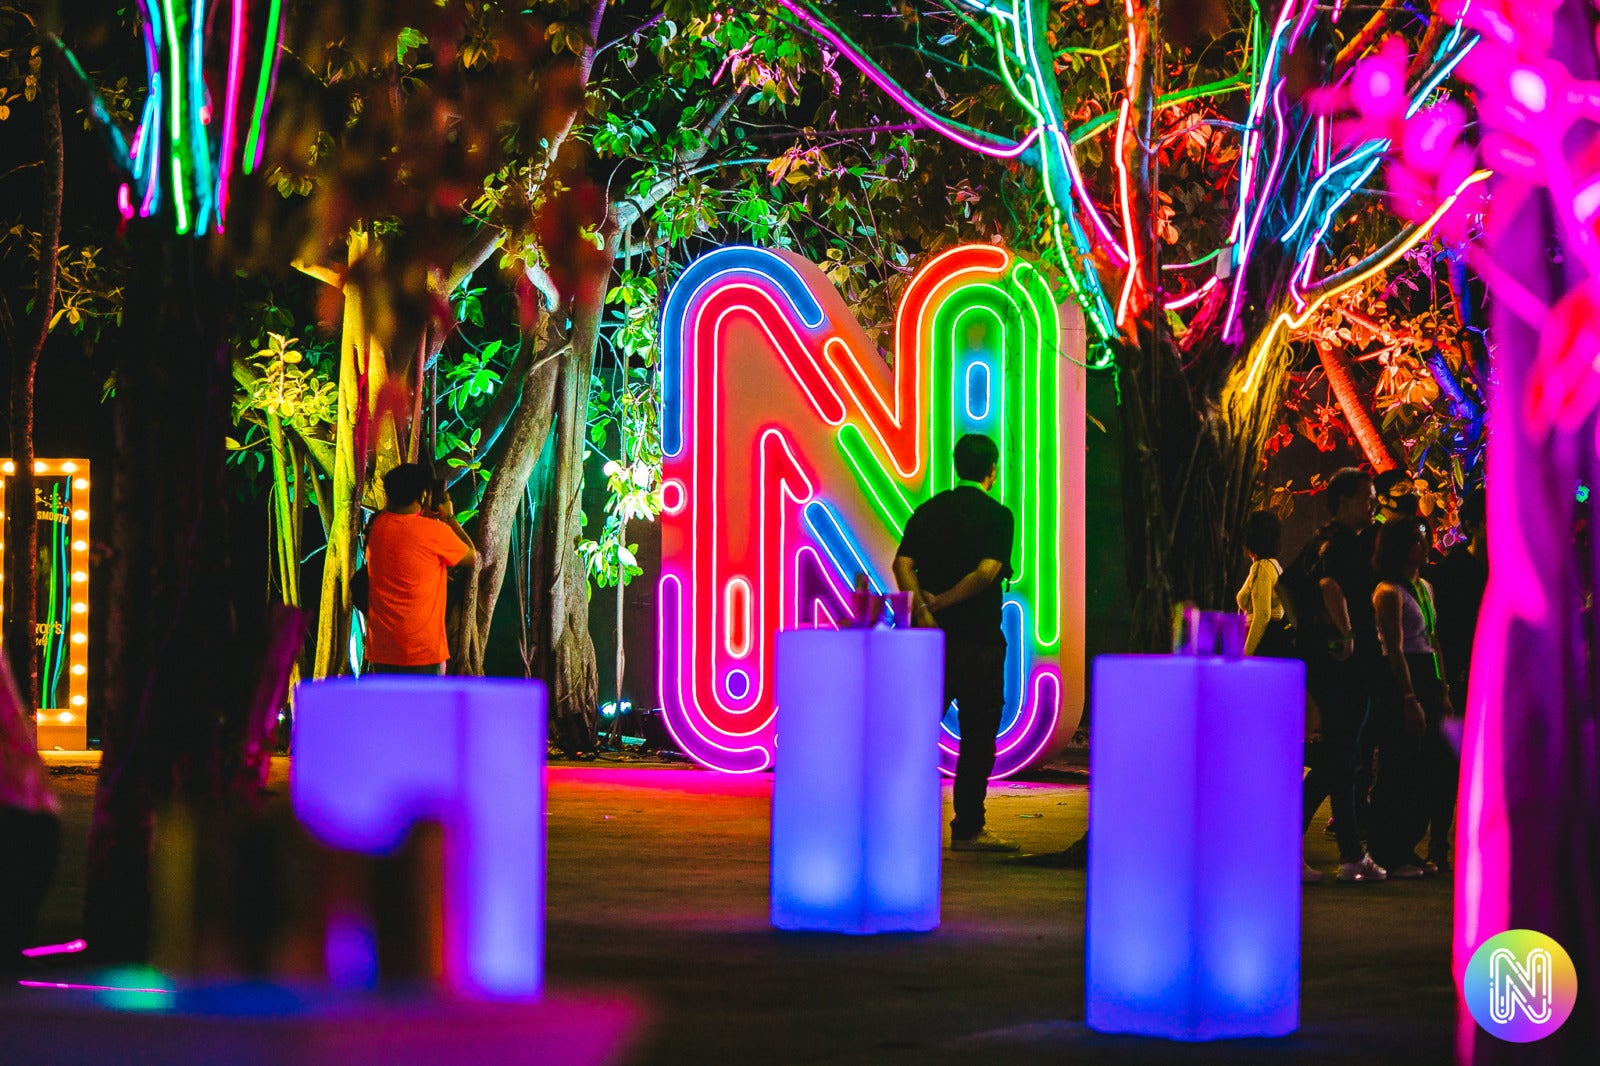 รีวิว “Neon Countdown 2022” งานเคาท์ดาวน์ที่มาพร้อมสุดยอดปาร์ตี้ต้อนรับปี 2023 คุ้มค่าแก่การรอคอย!